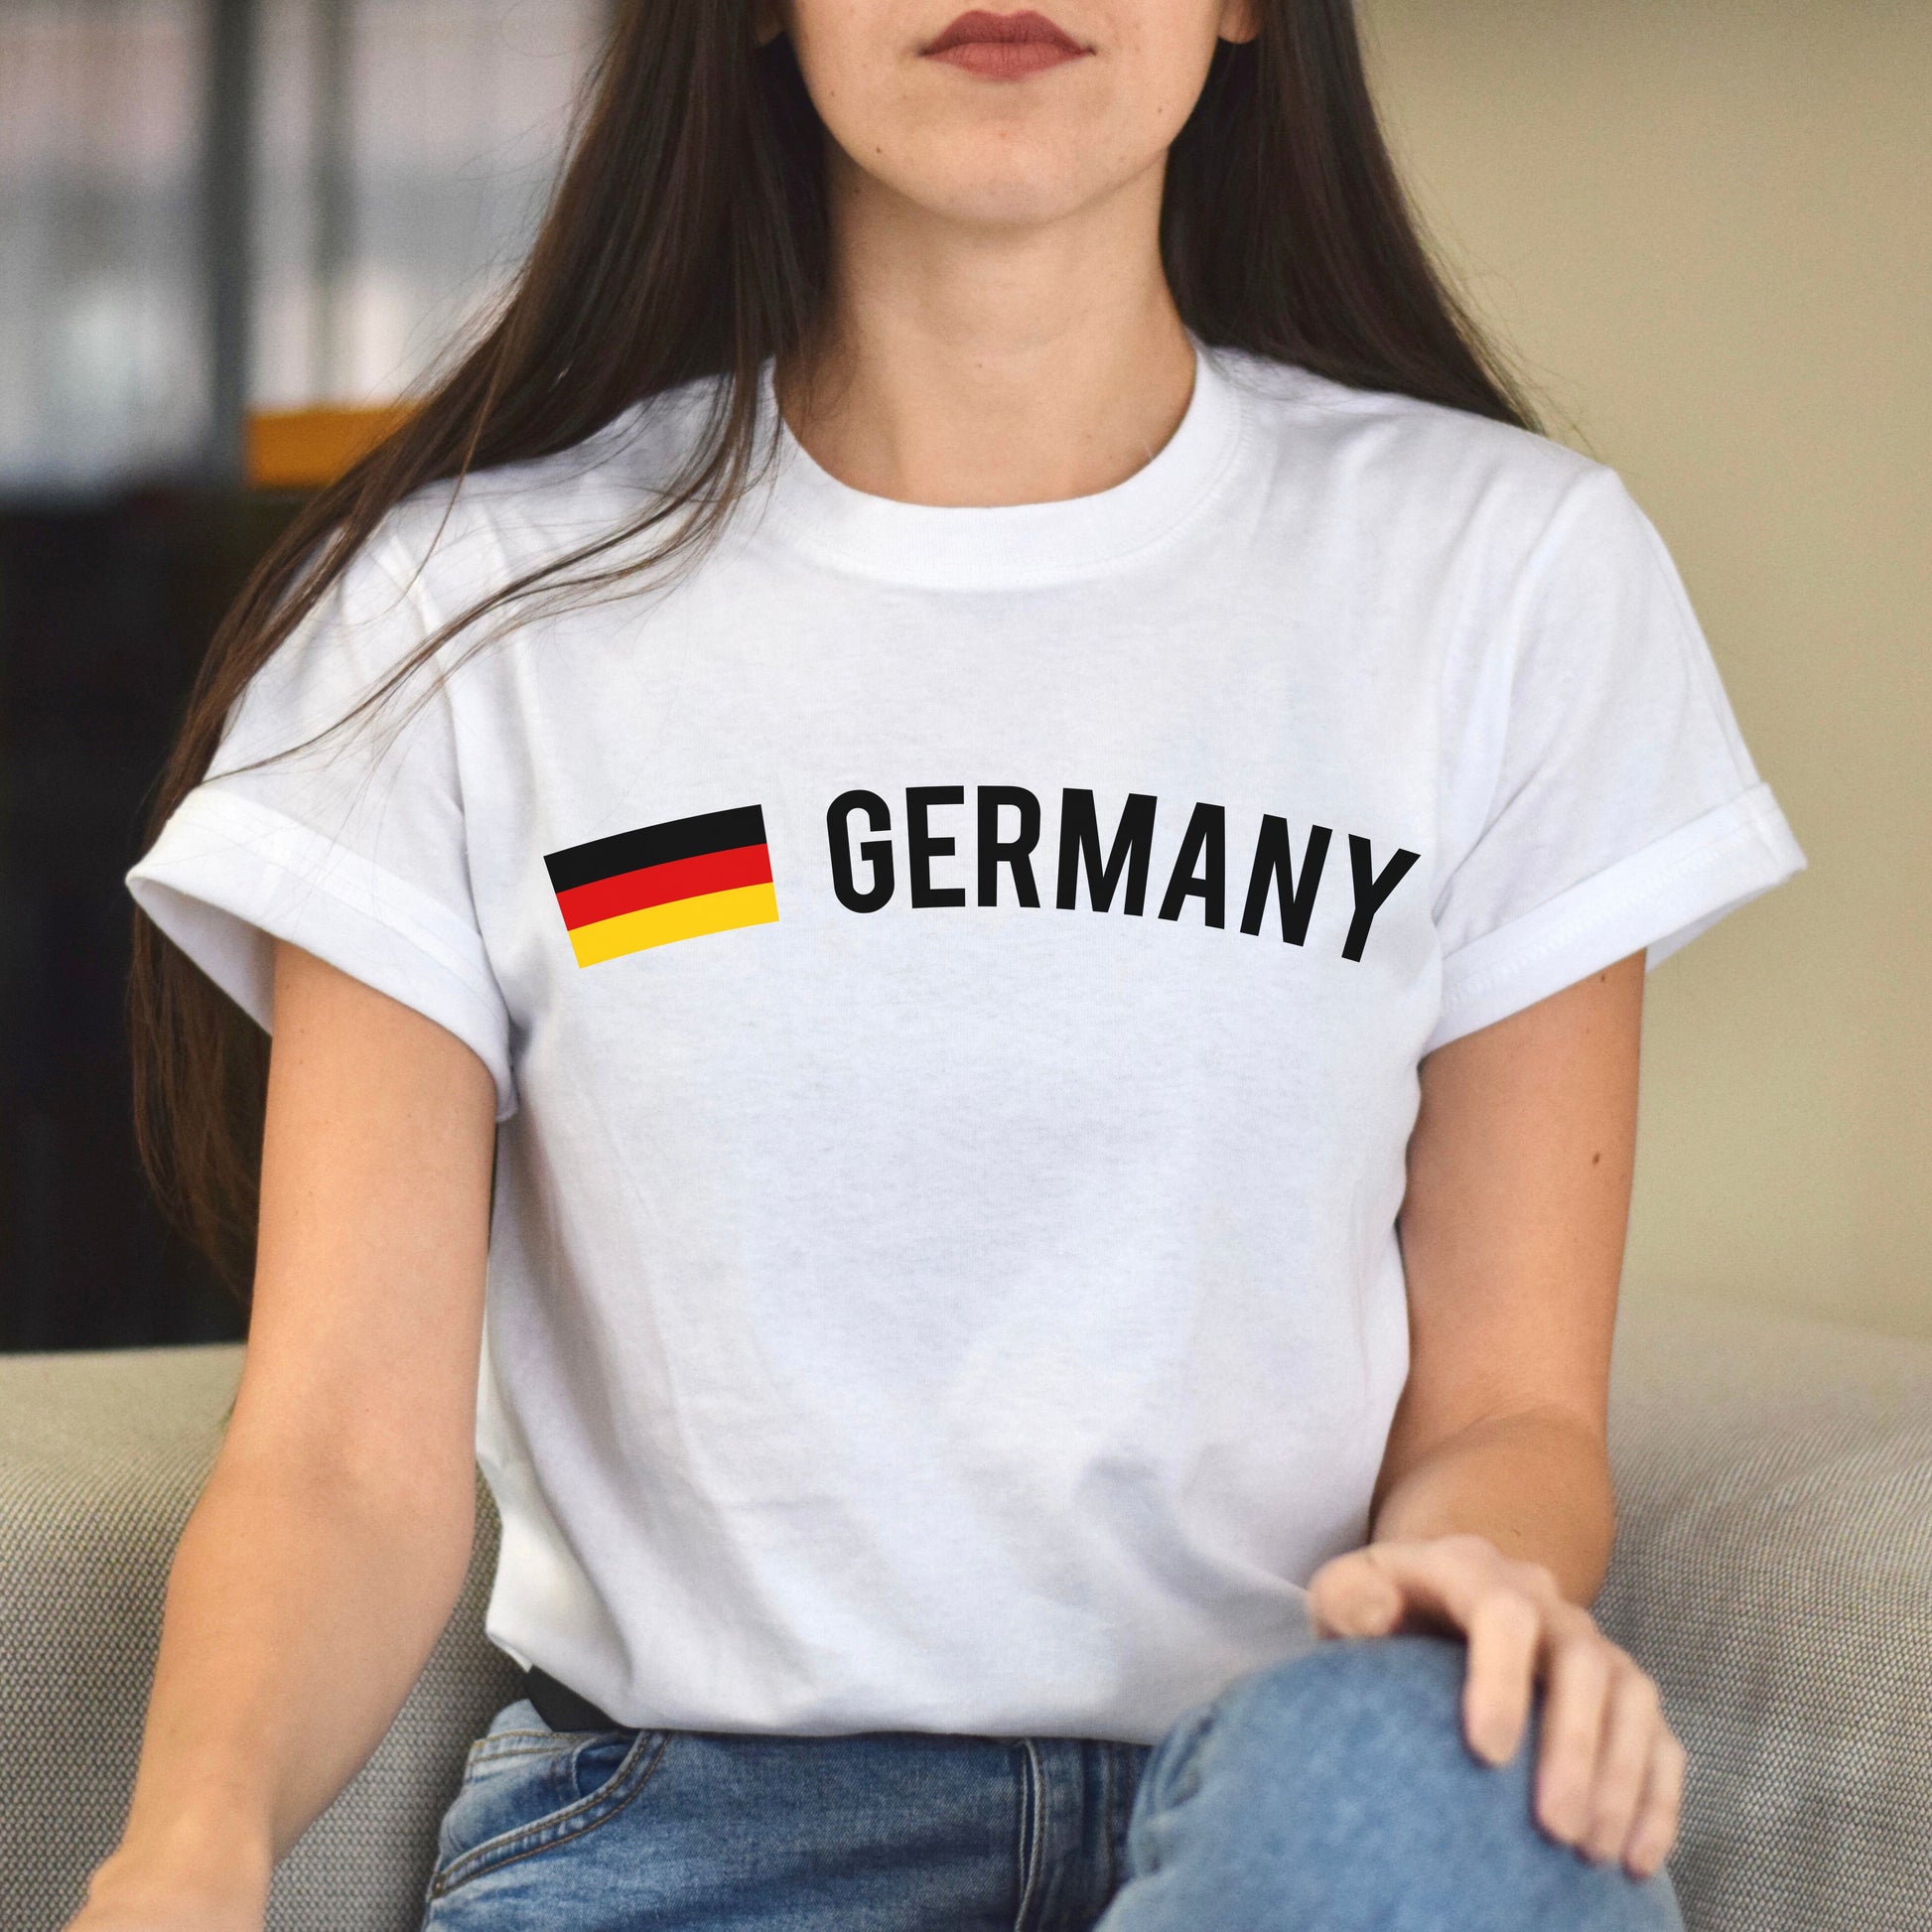 Germany Unisex T-shirt gift German flag tee Berlin White Black Dark Heather-White-Family-Gift-Planet